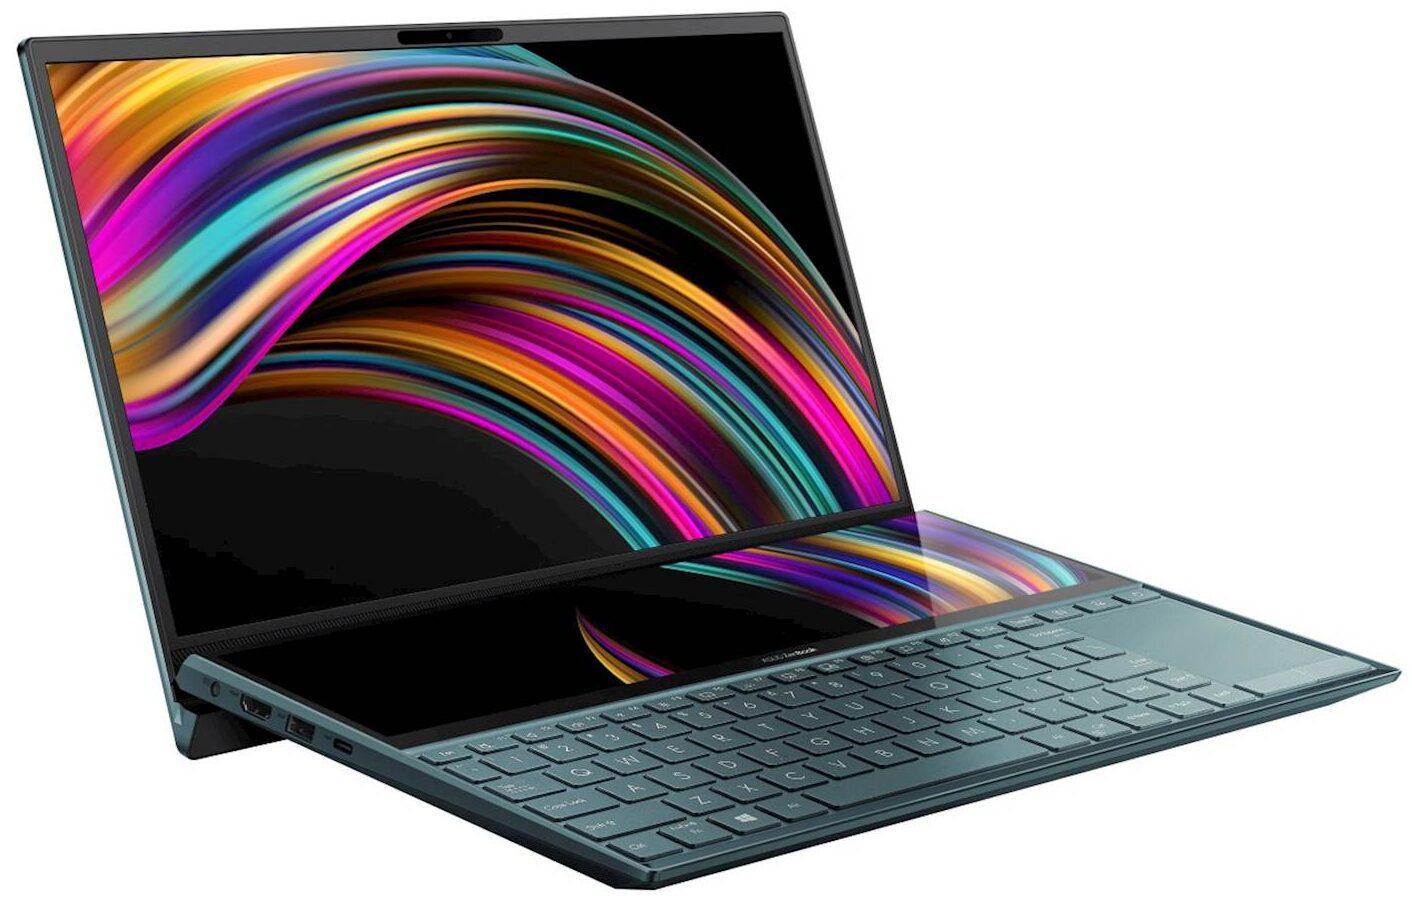 ASUS ZenBook Duo UX481FA